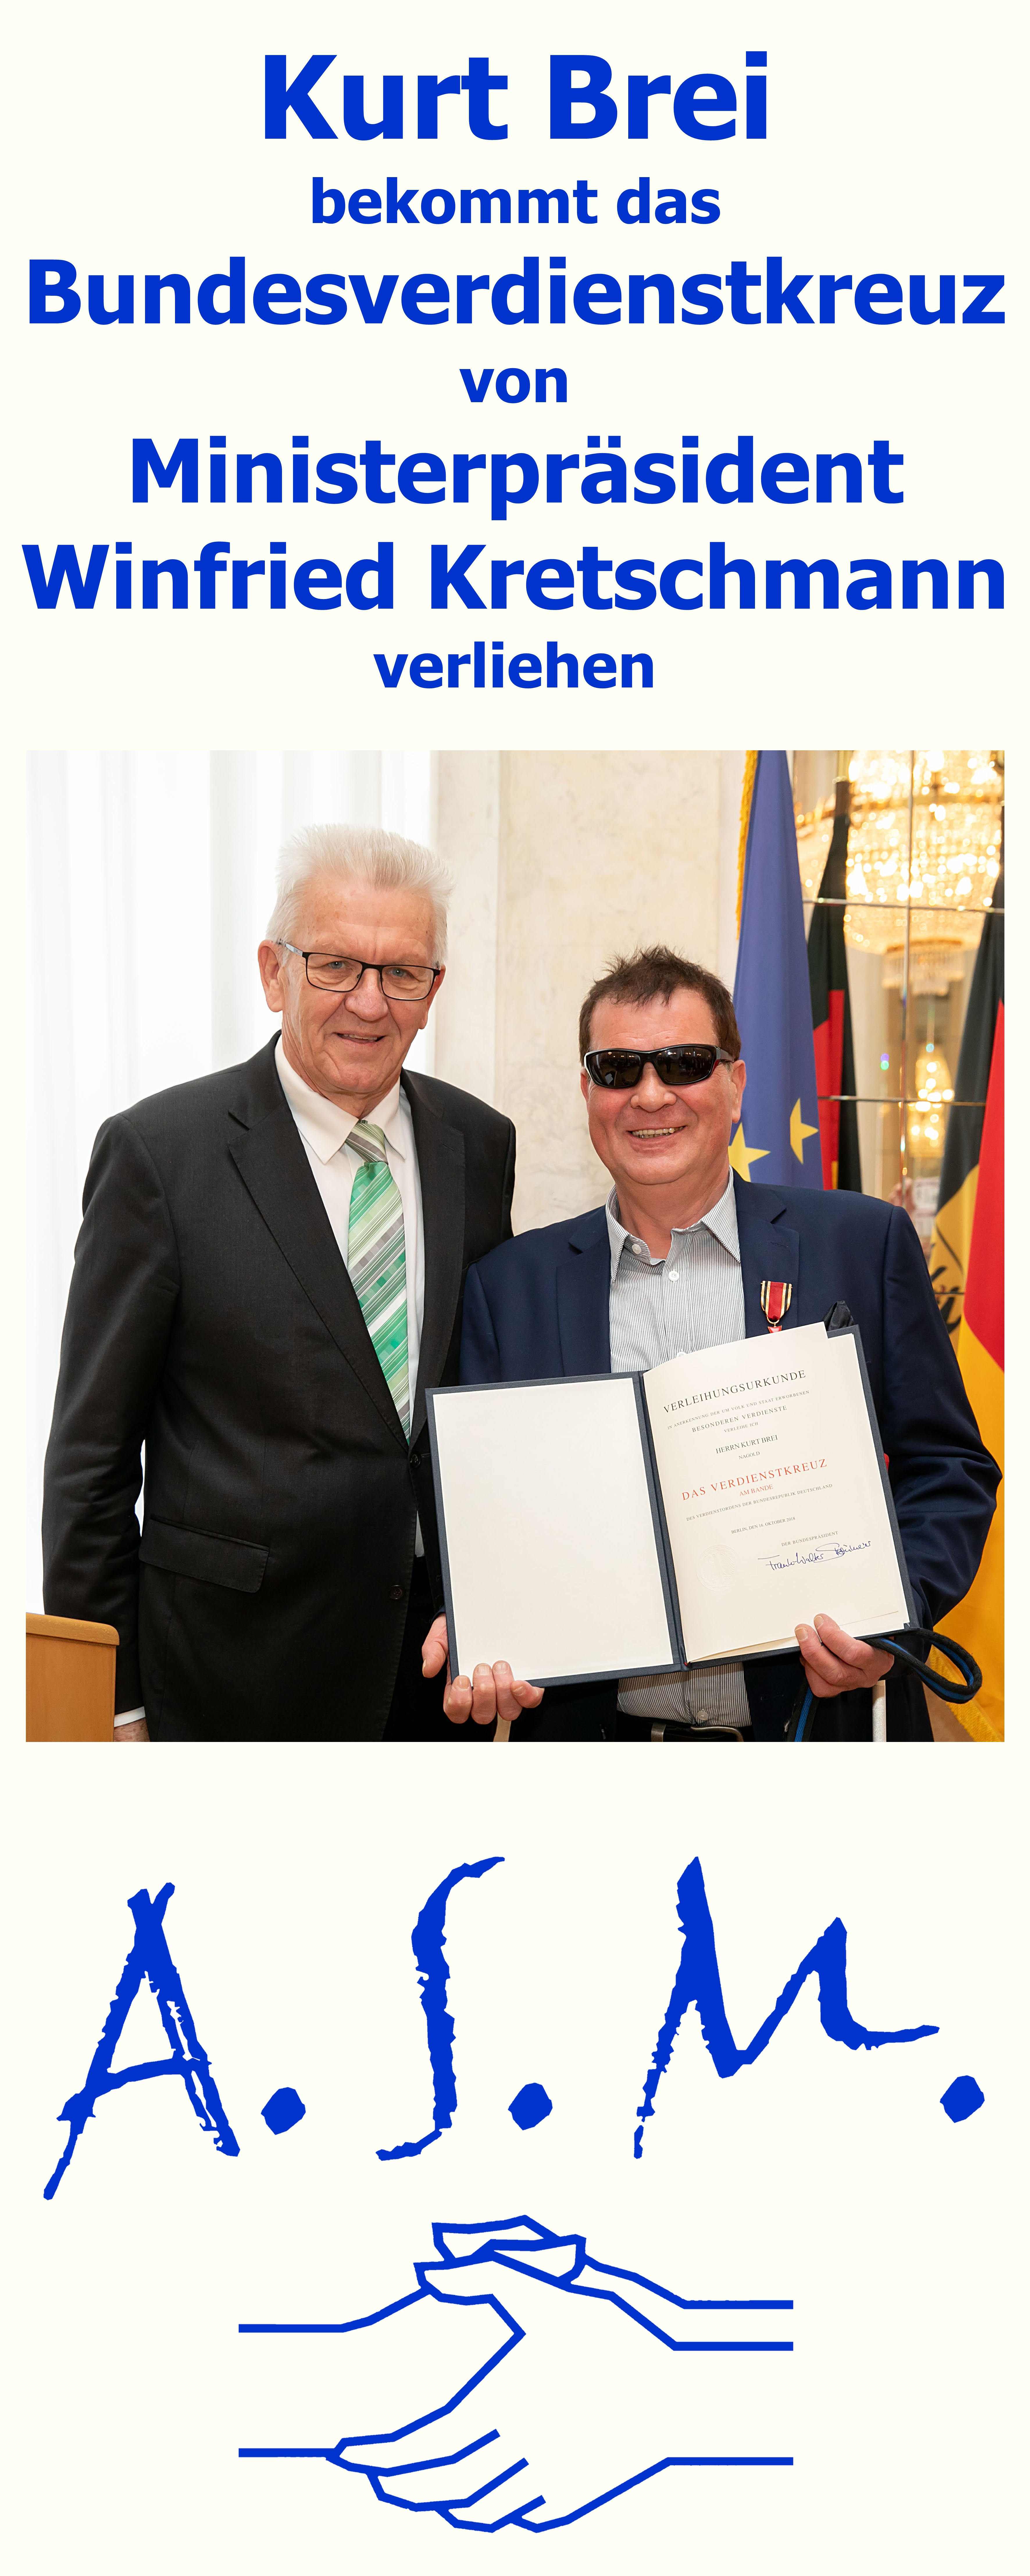 07. Verleihung des undesverdienstkreuzes an Kurt Brei